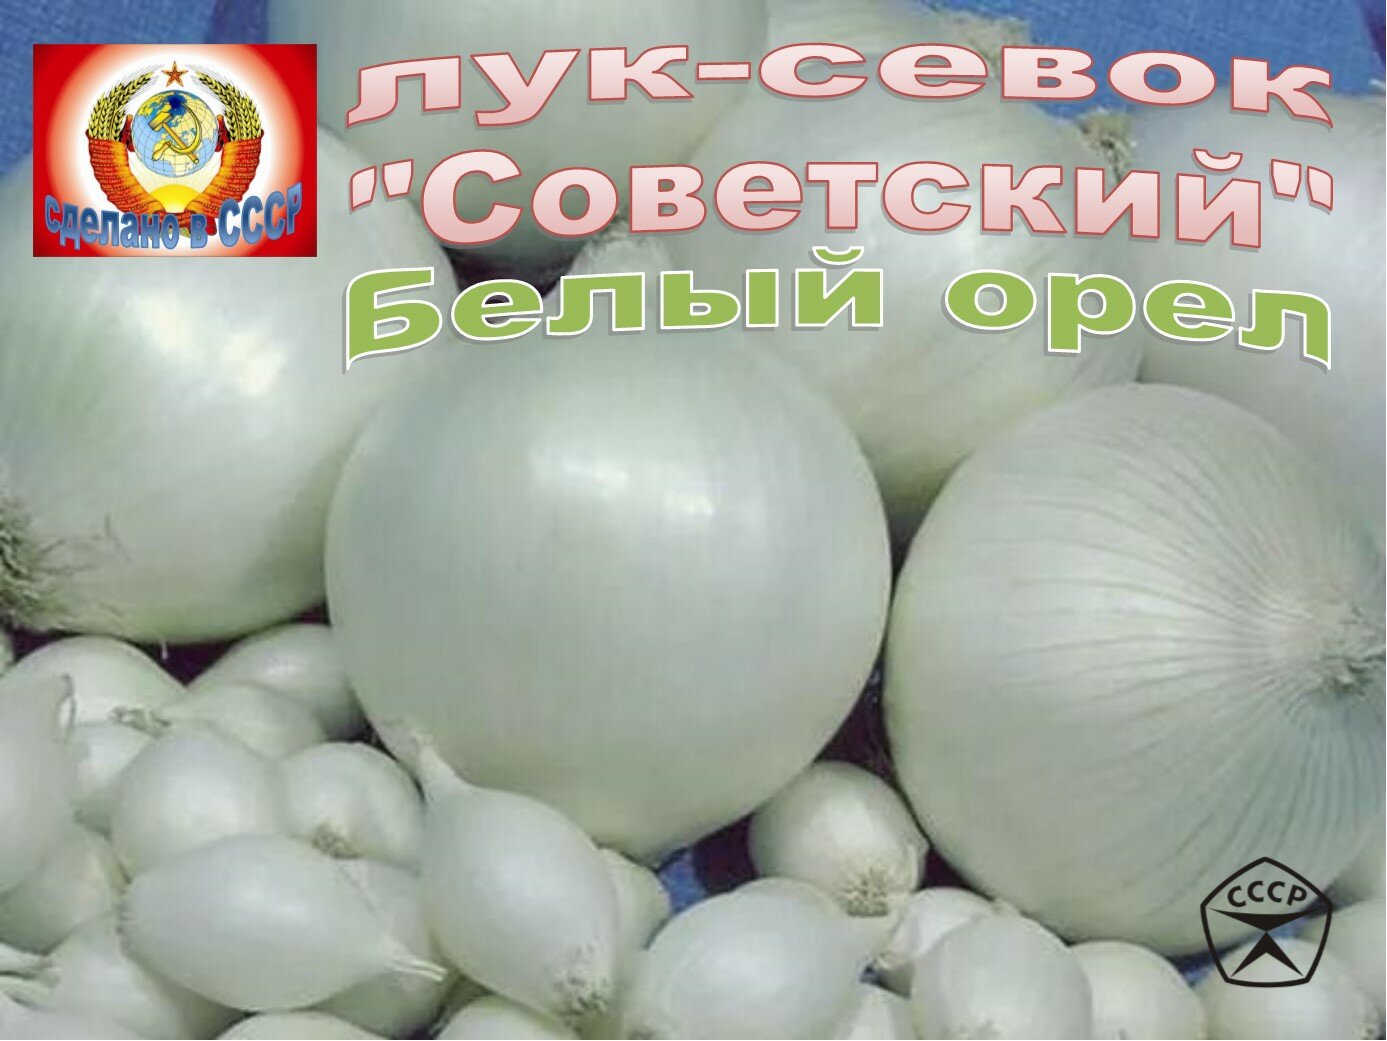 Лук-севок Белый орел "Советский", 1-я категория, 1000 грамм